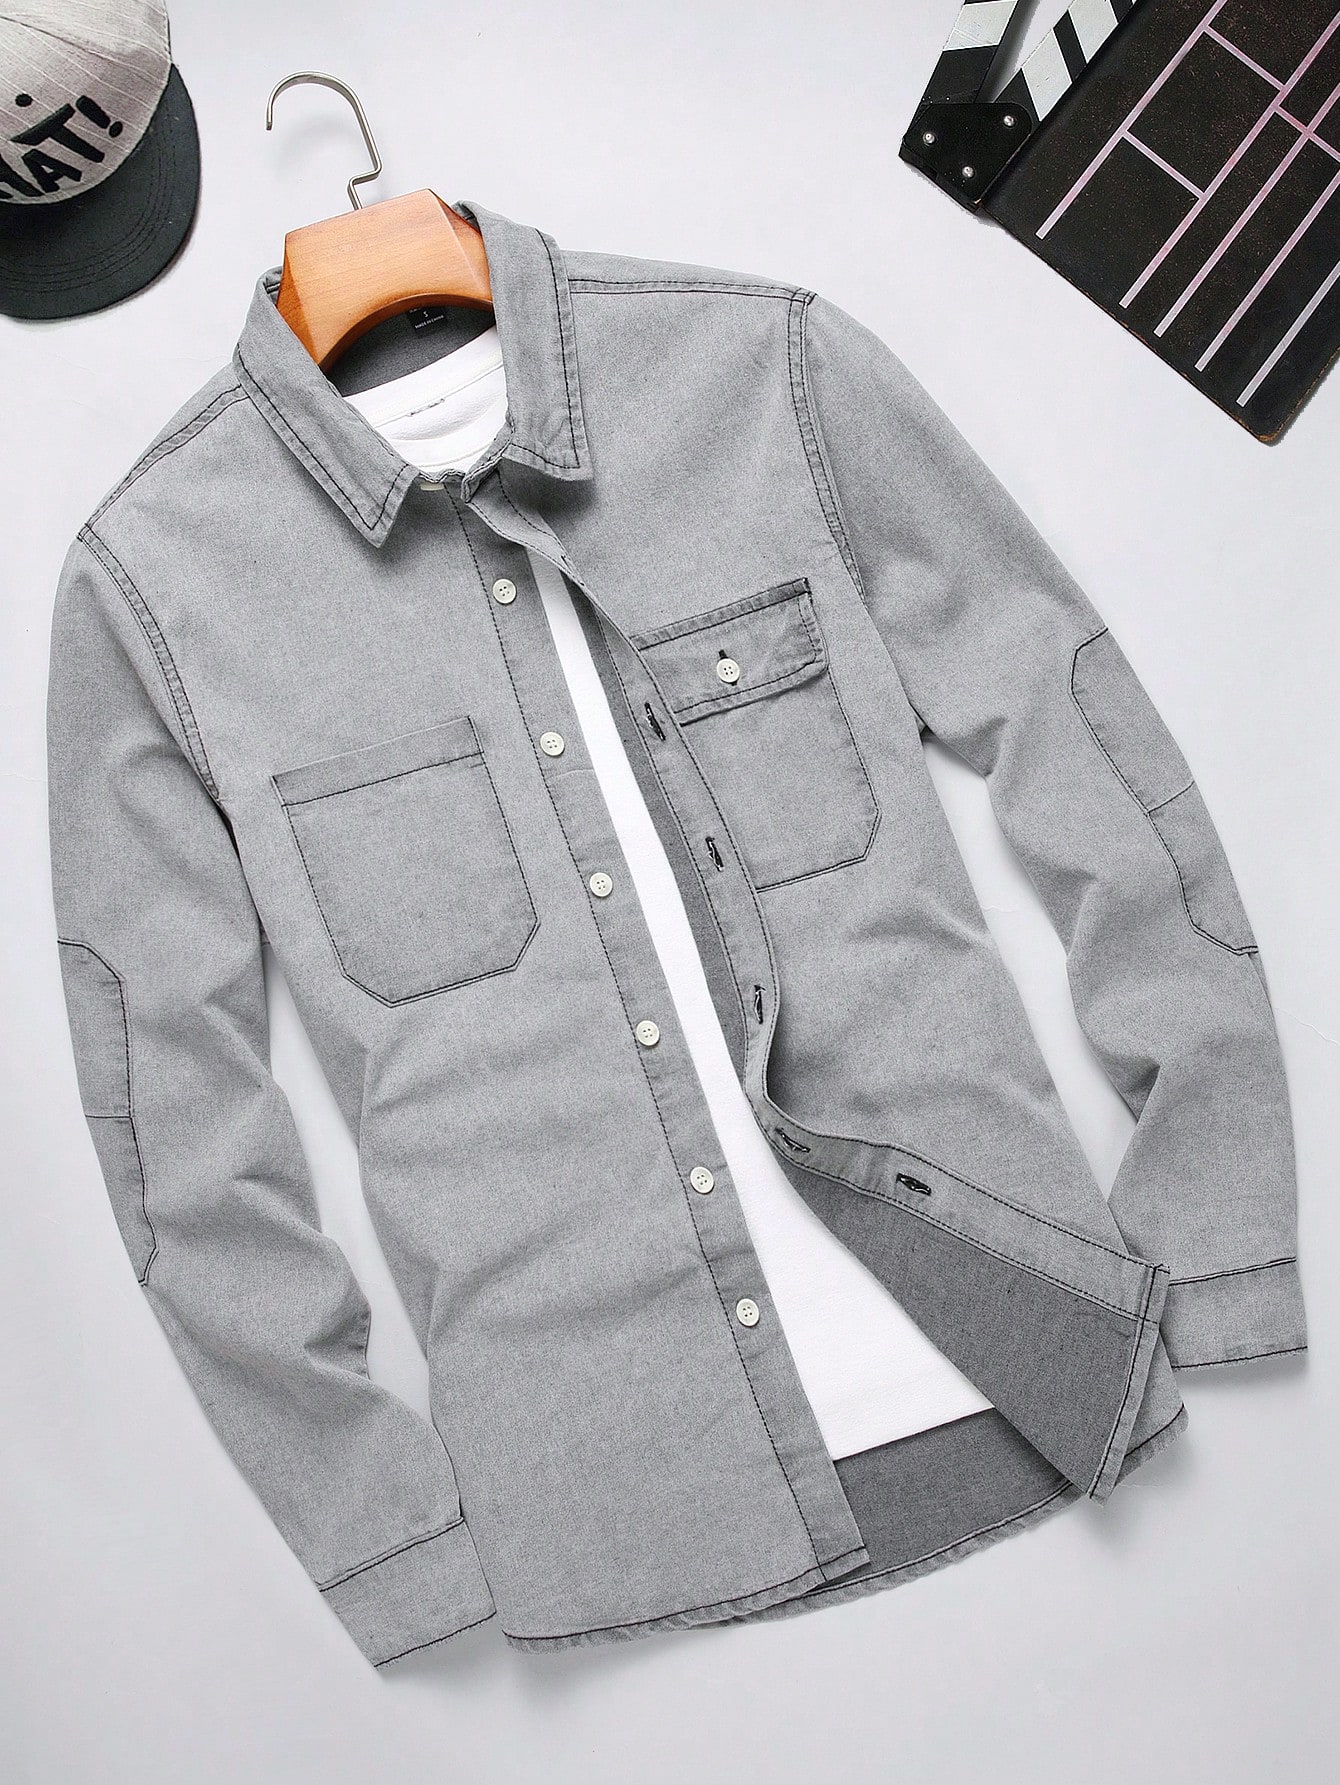 цена Мужская джинсовая рубашка Manfinity EMRG с длинными рукавами и карманами, серый